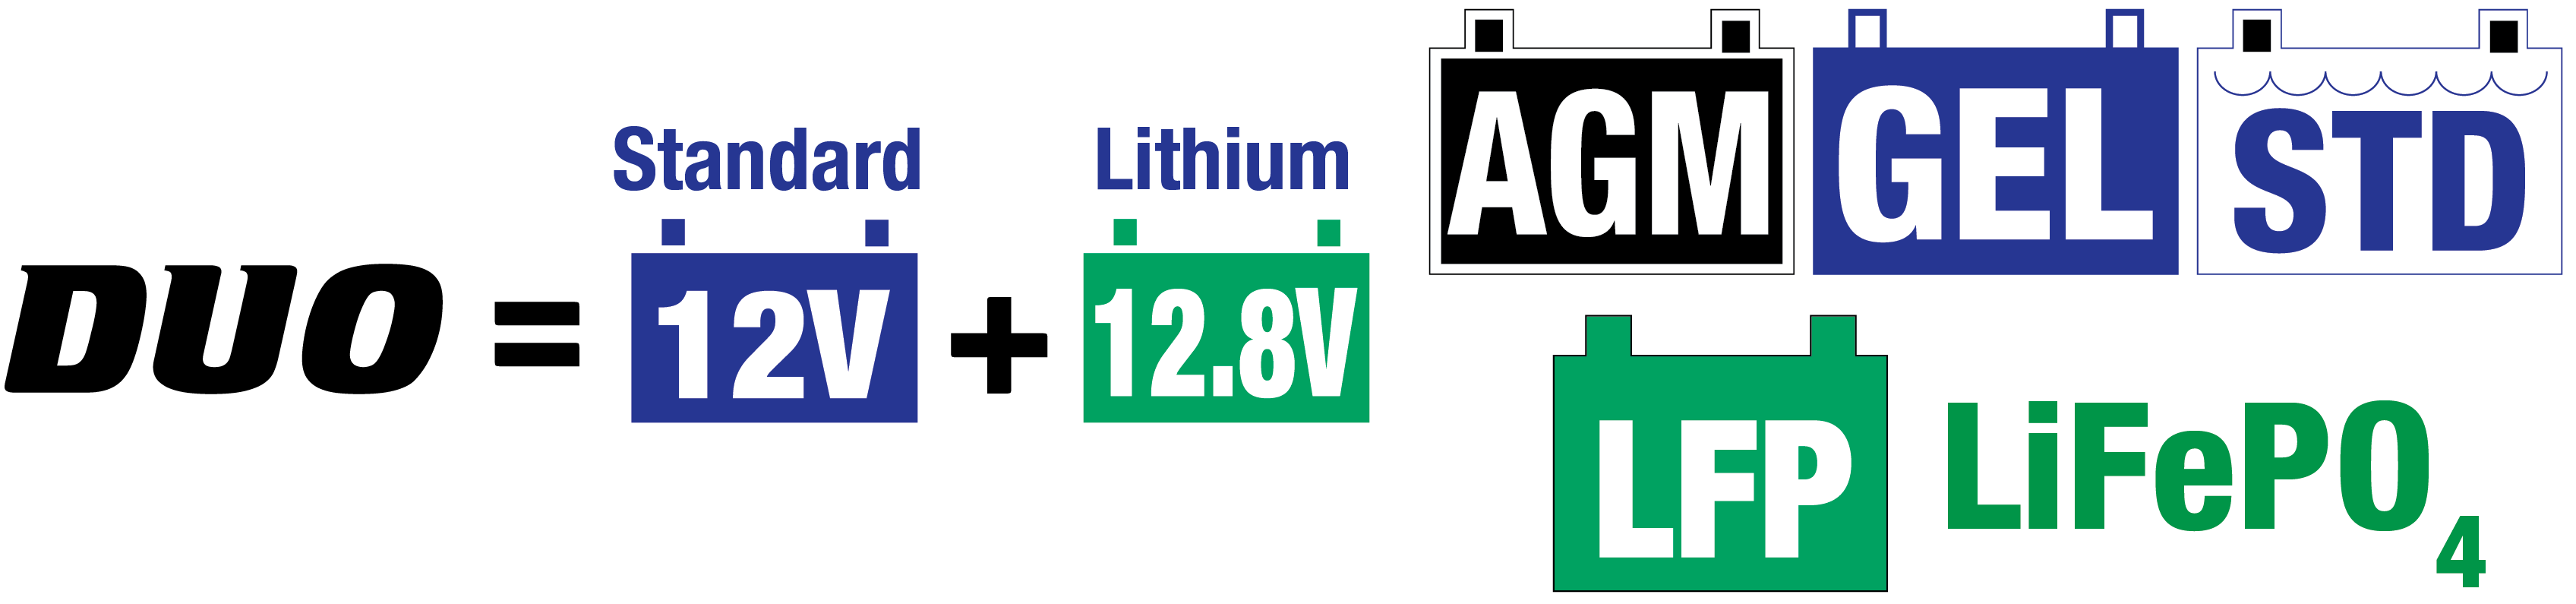 el cargador solar es ideal para baterías de plomo de 12V / 12,8V de litio